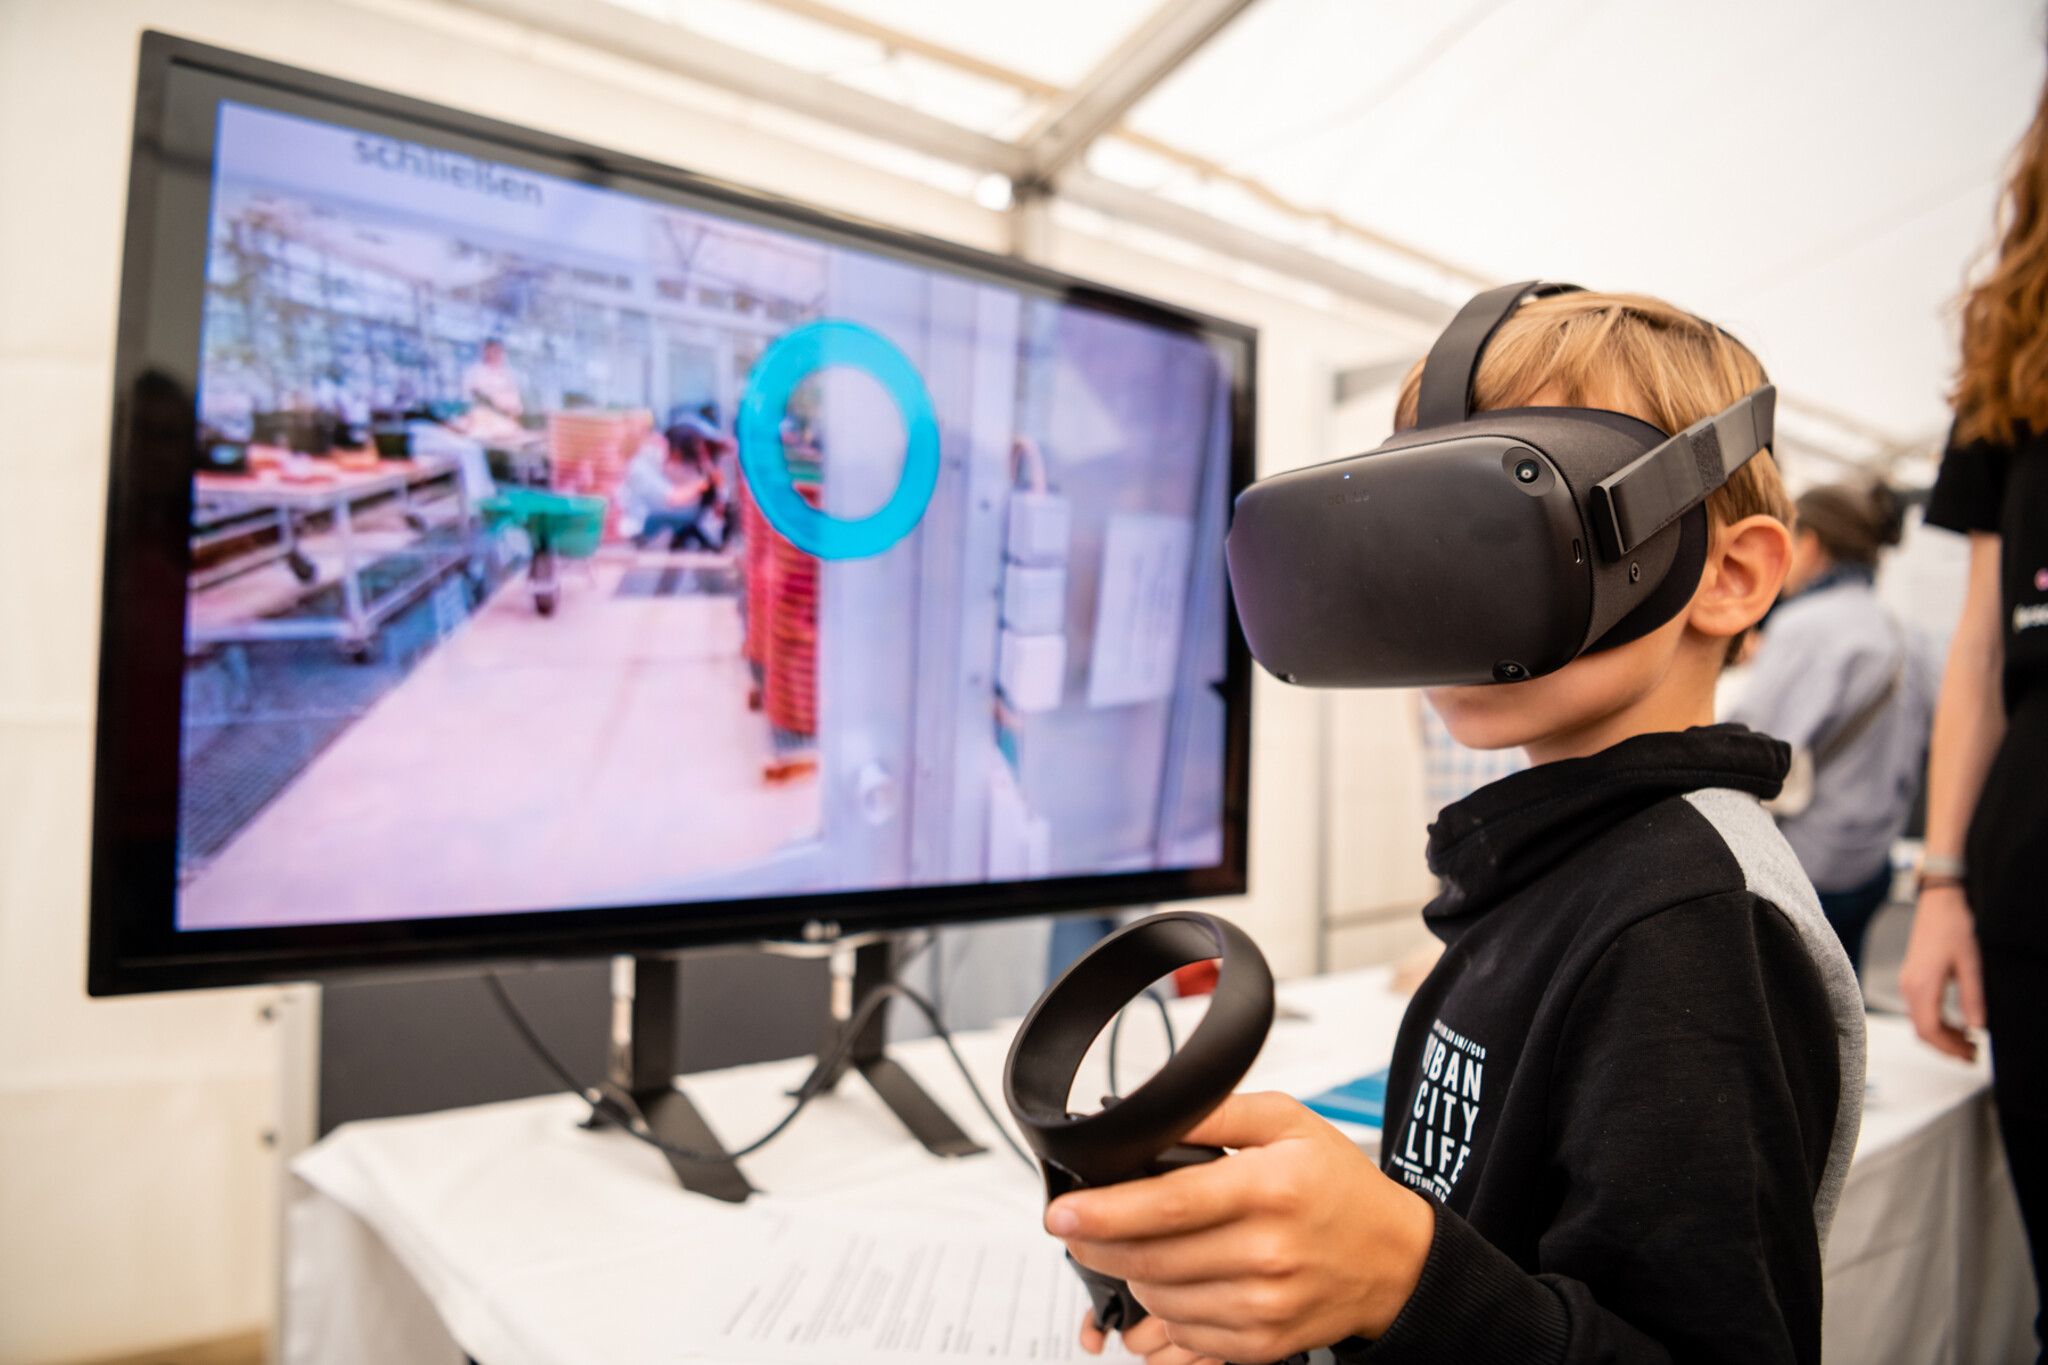 Kind hat VR Brille auf und im Hintergrund ist ein großer Bildschirm zu sehen